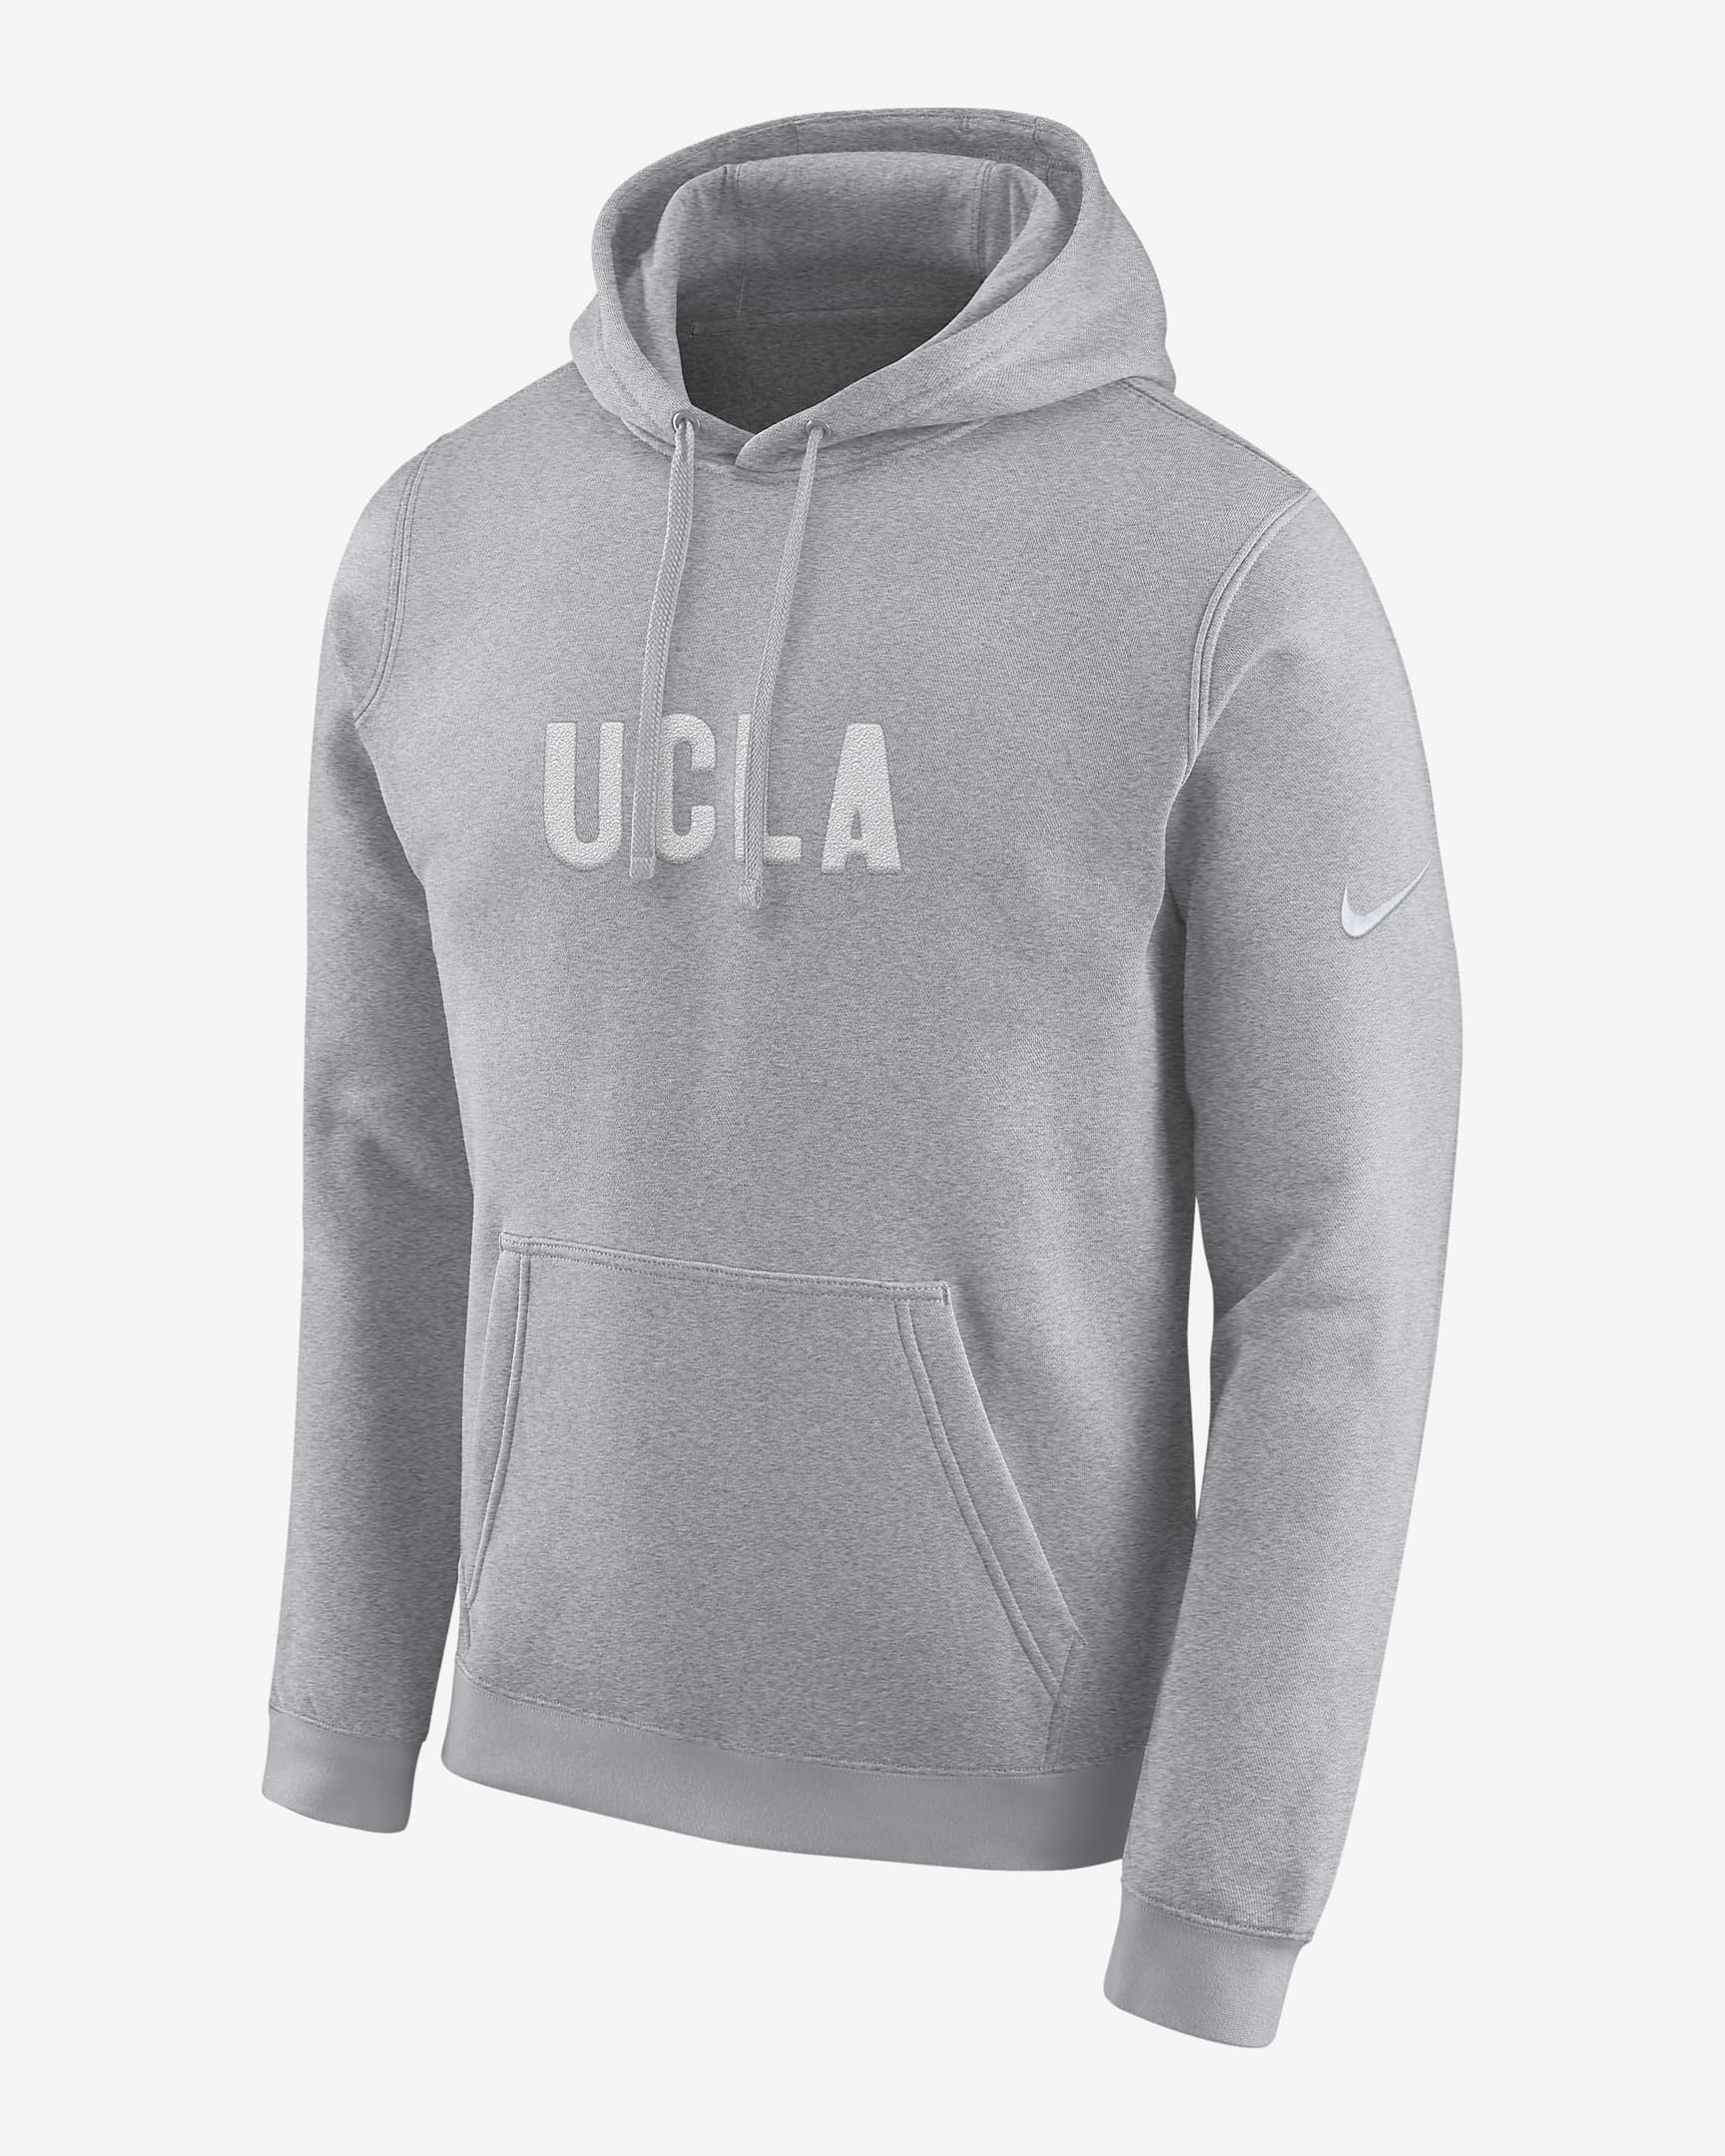 Nike College (UCLA) Men's Hoodie